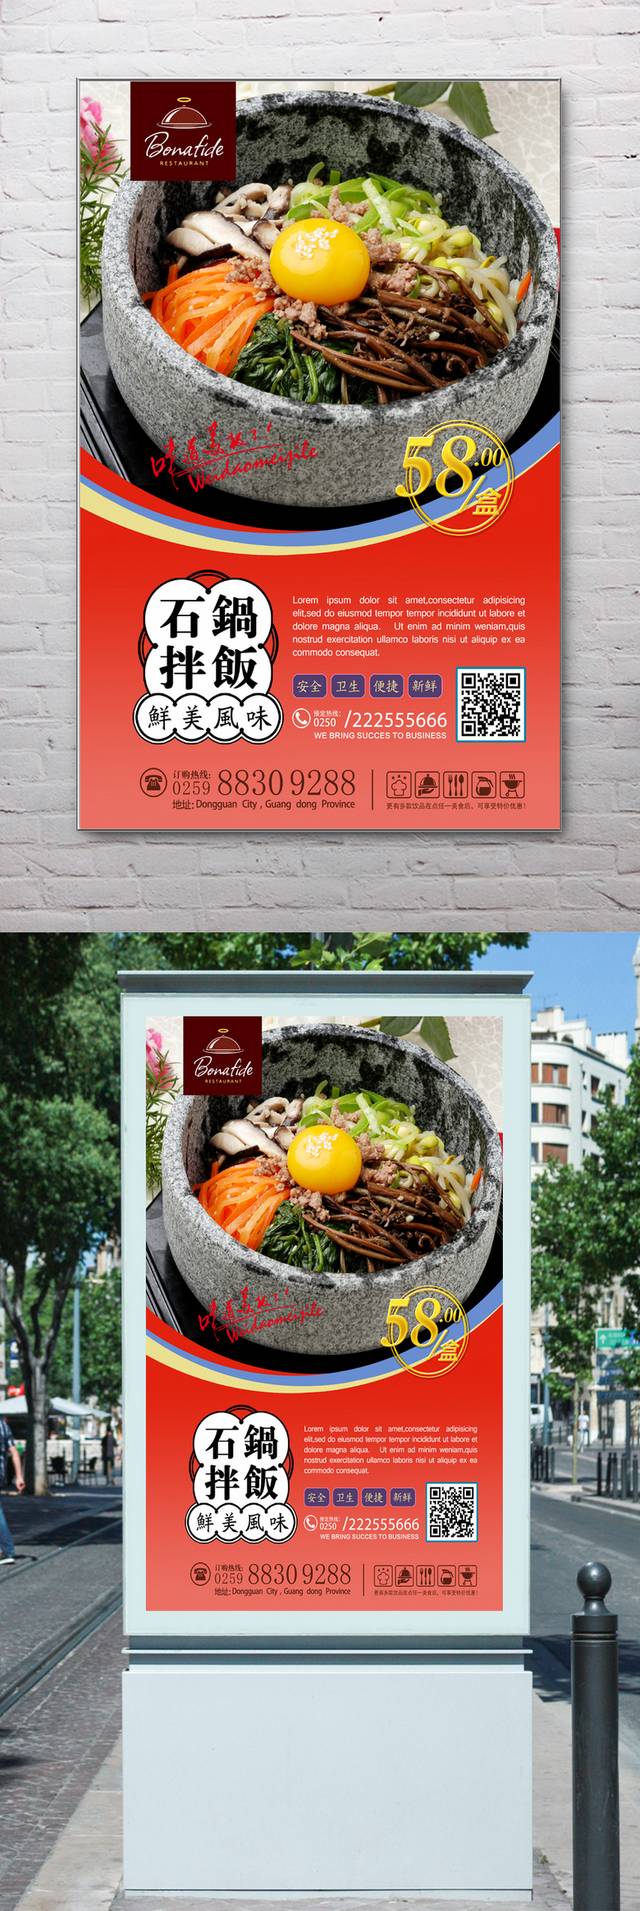 石锅拌饭促销海报设计